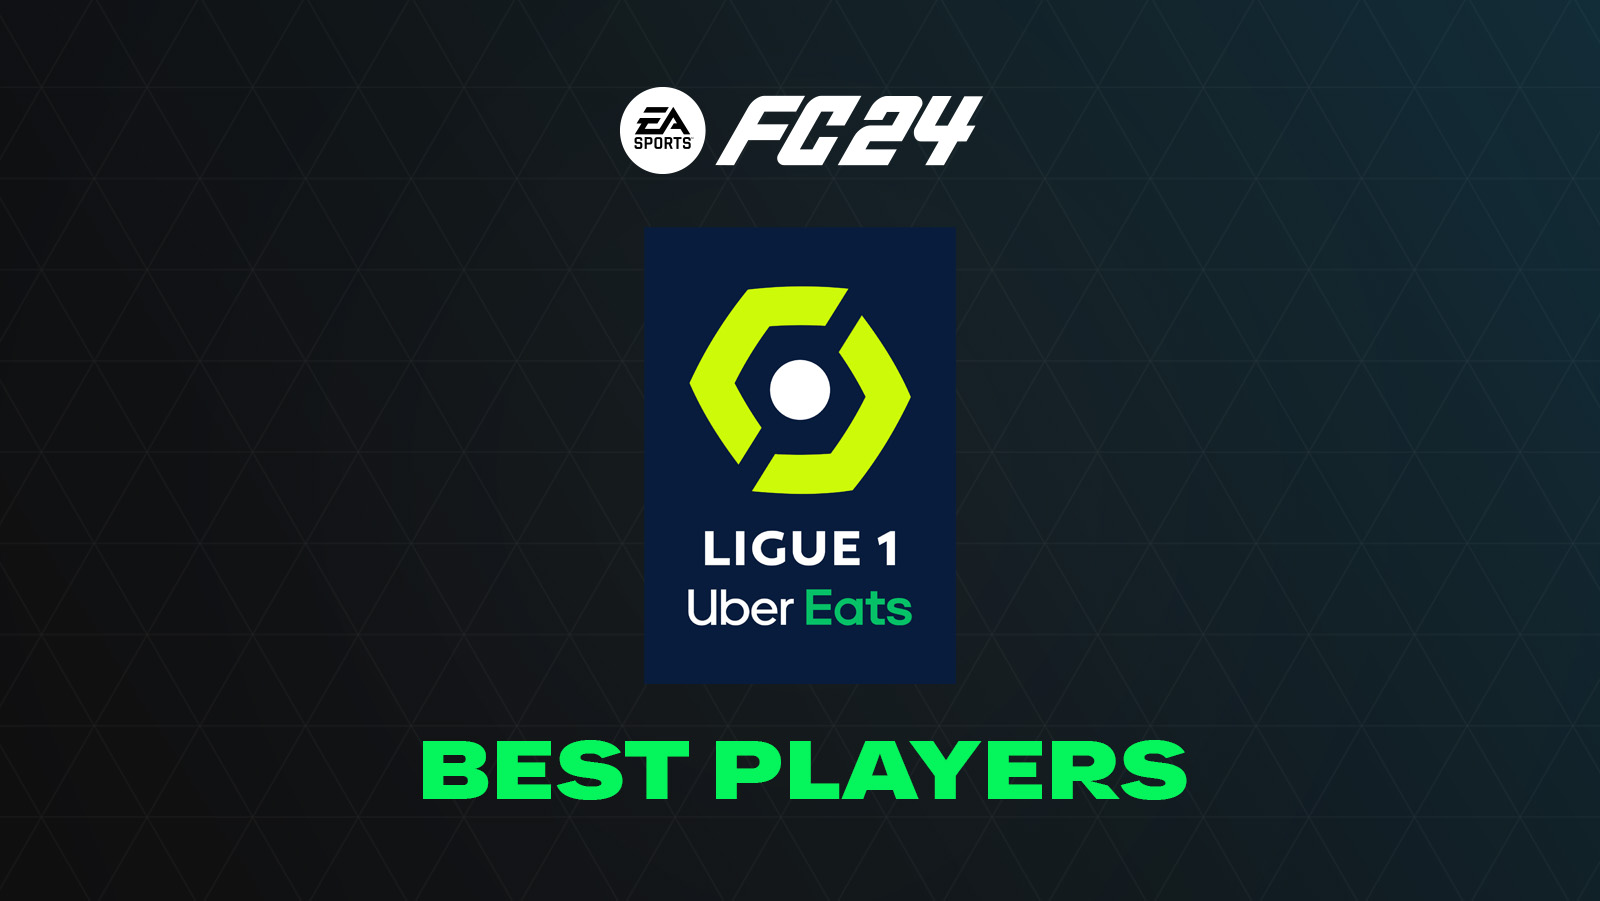 FC 24 Best Ligue 1 Players (Top GKs, Defenders, Midfielders & Forwards)